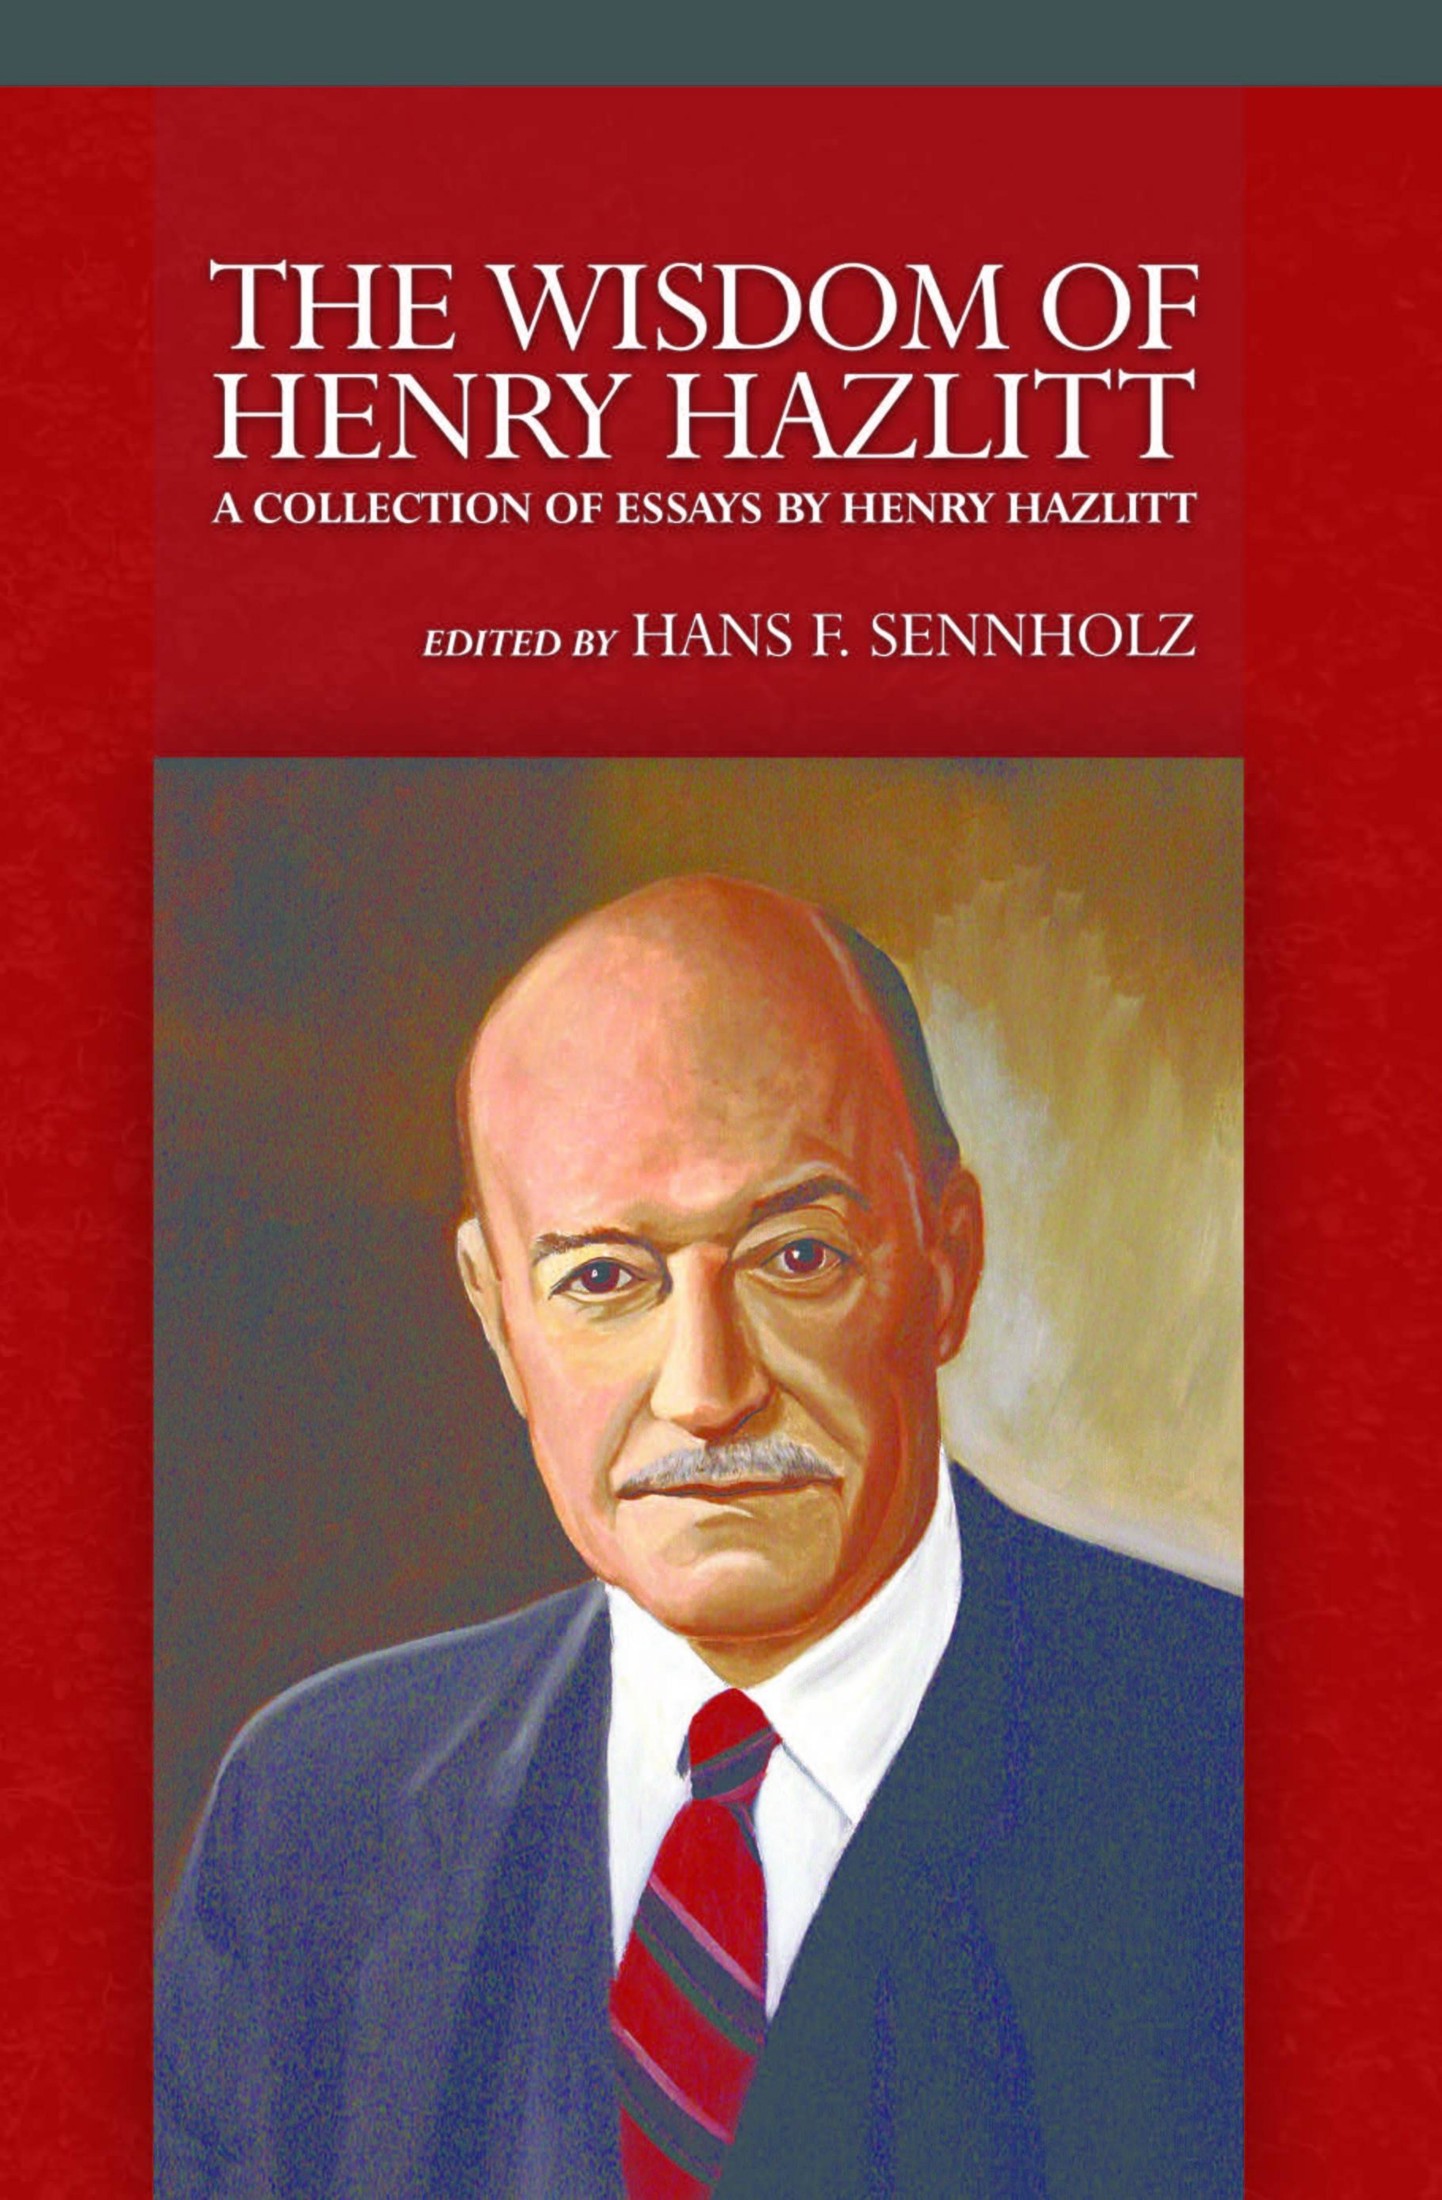 The Wisdom of Henry Hazlitt